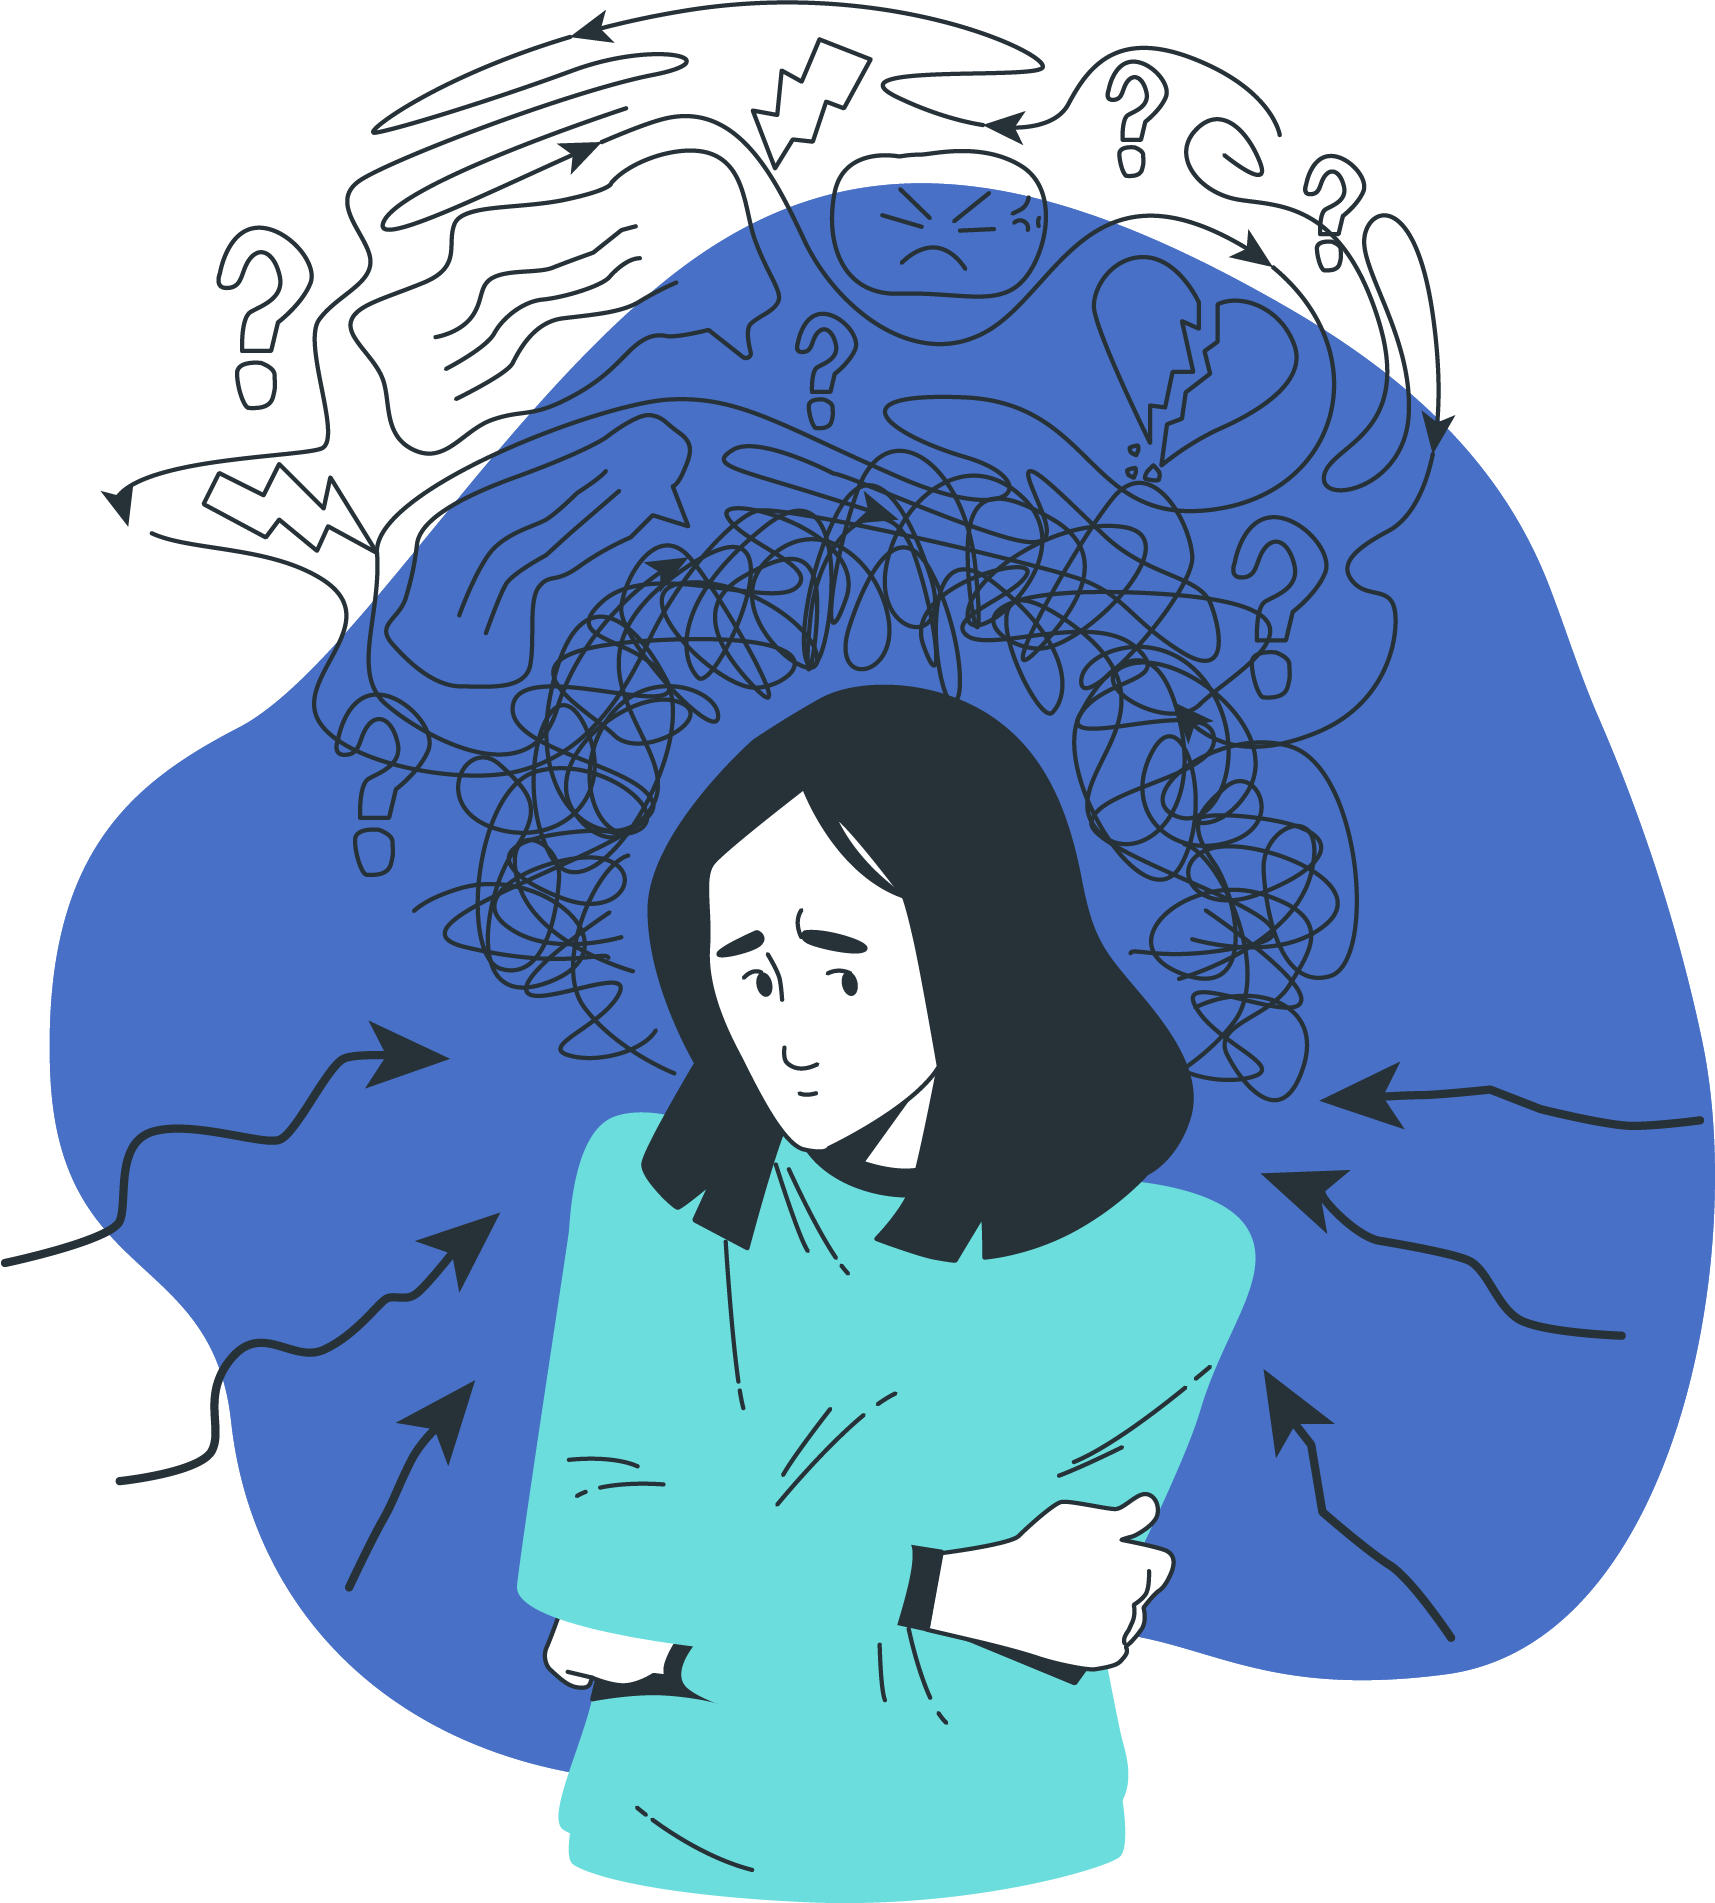 sintomas do transtorno de ansiedade generalizada